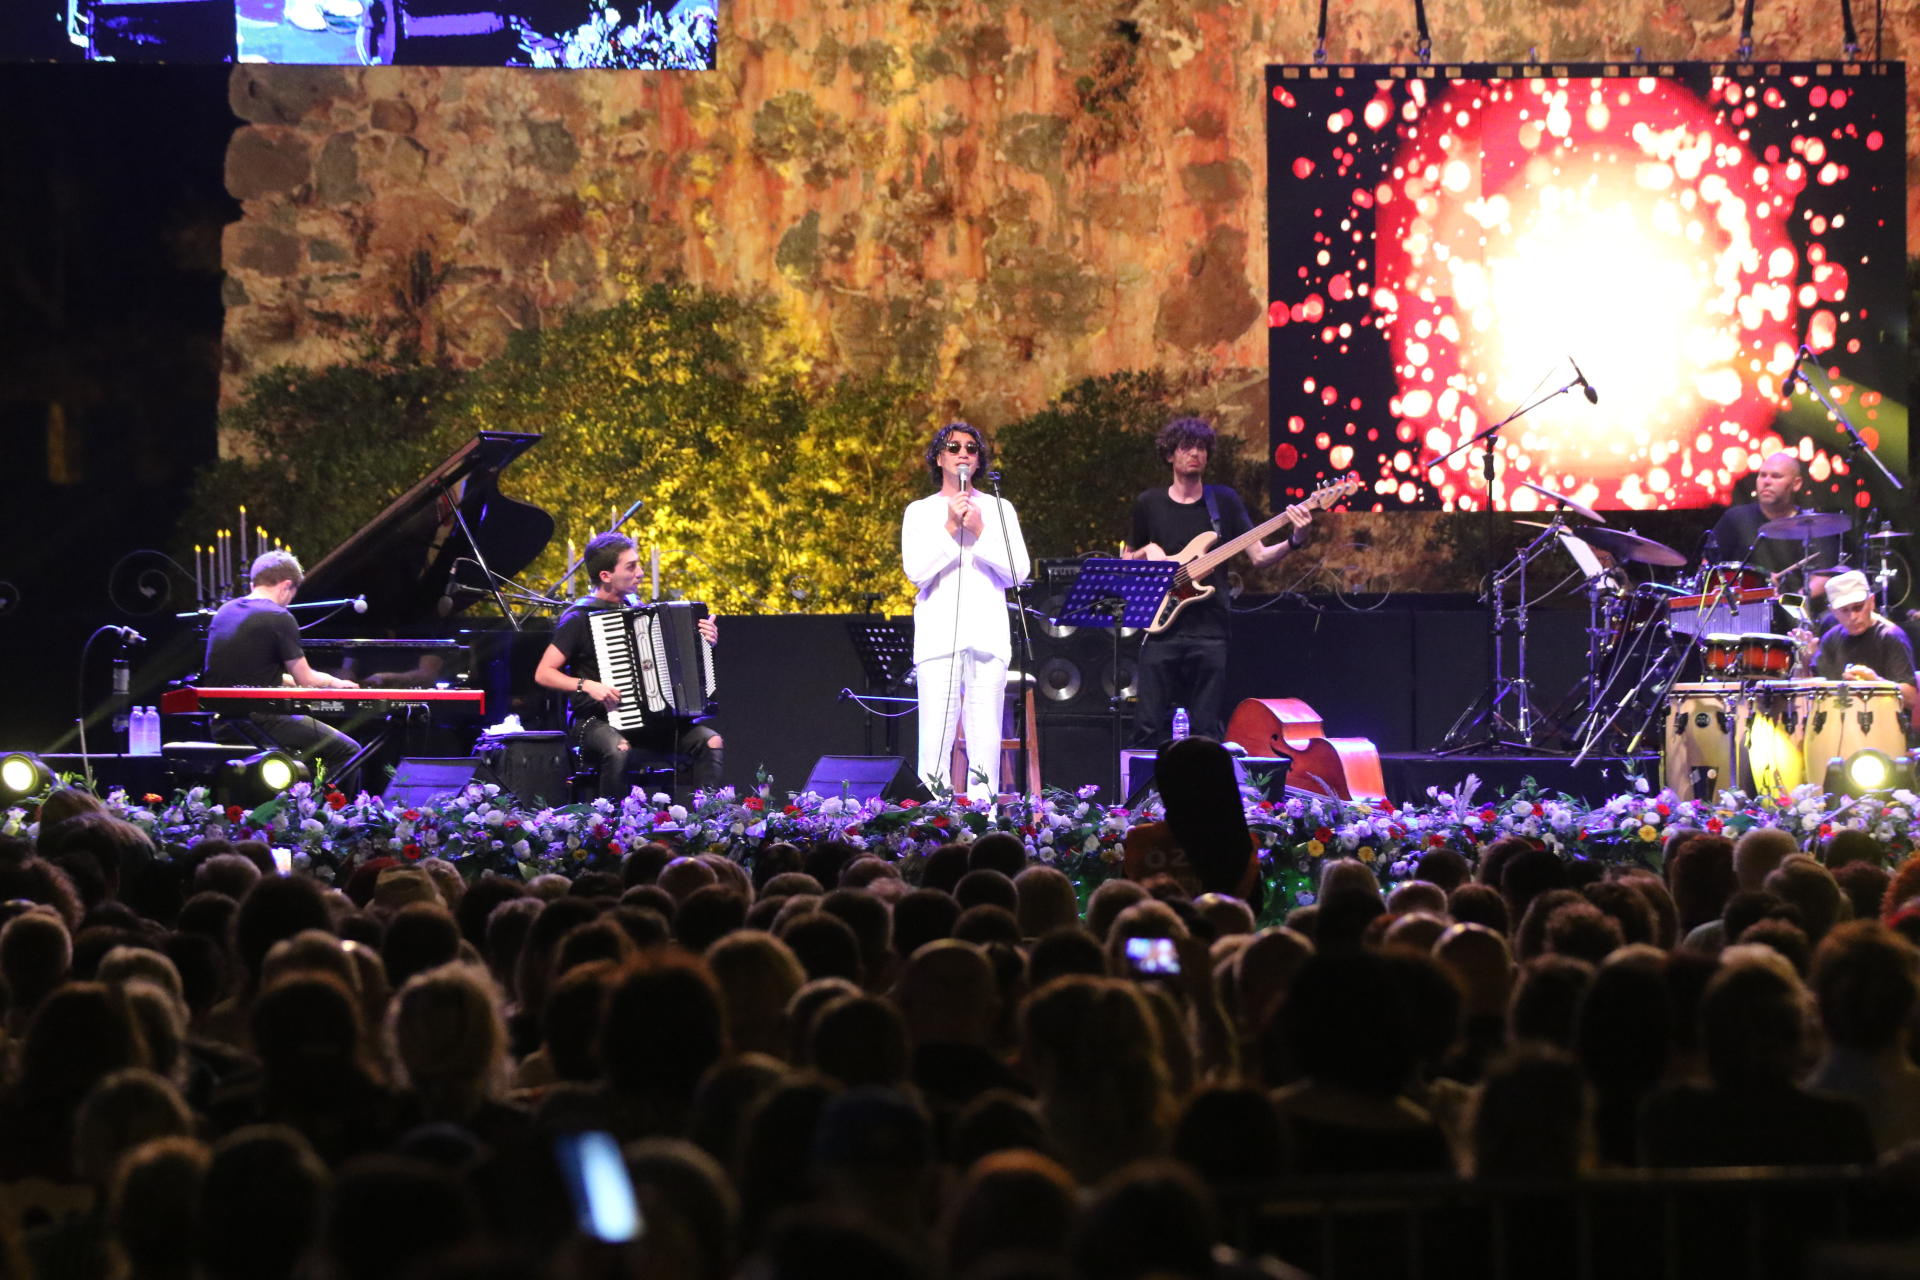 Группа "Тофик Гасансой и Бакуба джаз бэнд" покорила международный фестиваль в Турции (ФОТО)